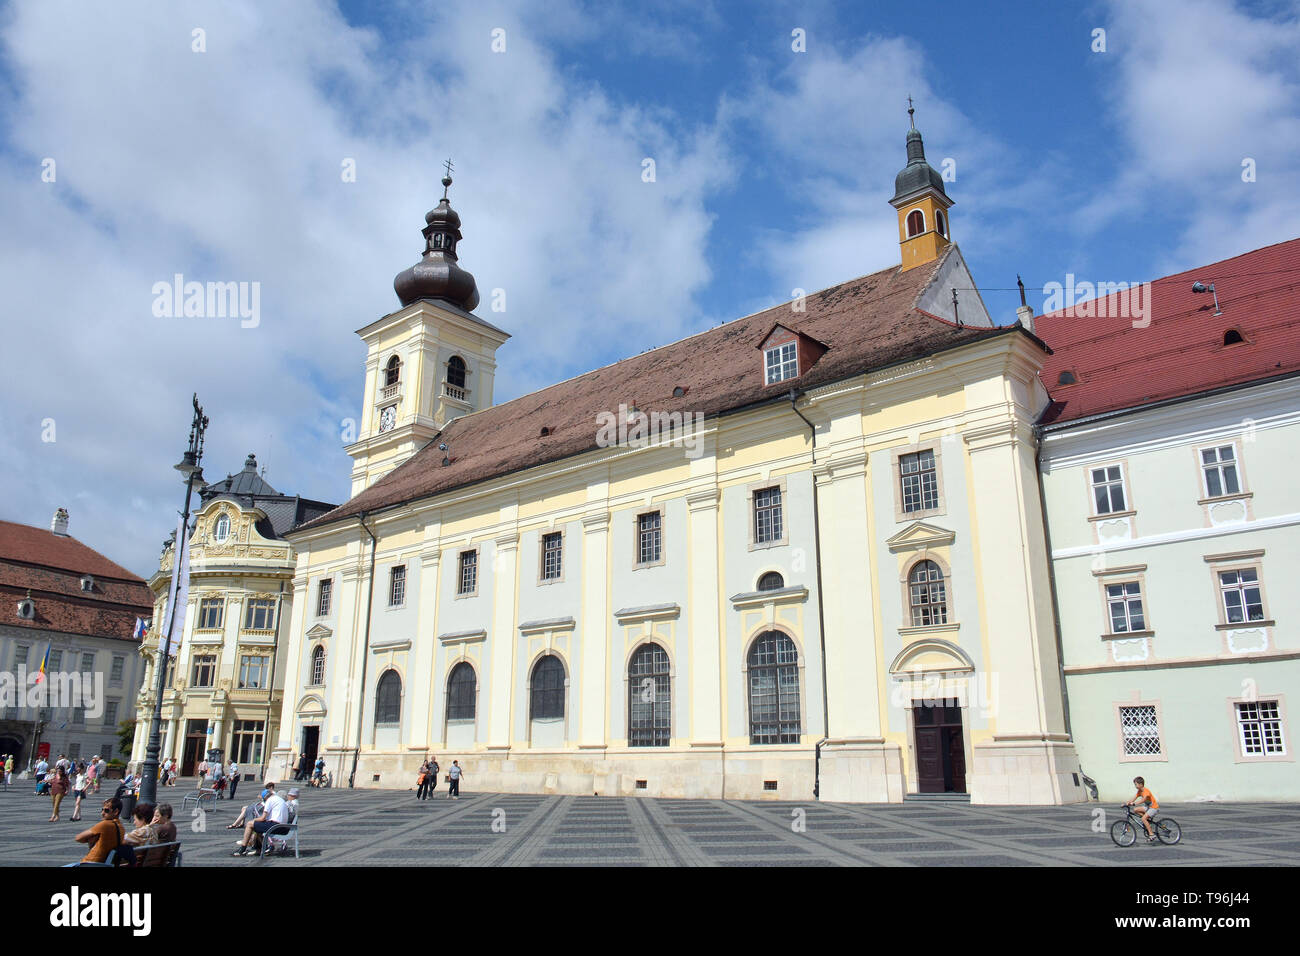 Église catholique, Sibiu, Nagyszeben, Hermannstadt, Roumanie, Europe Banque D'Images